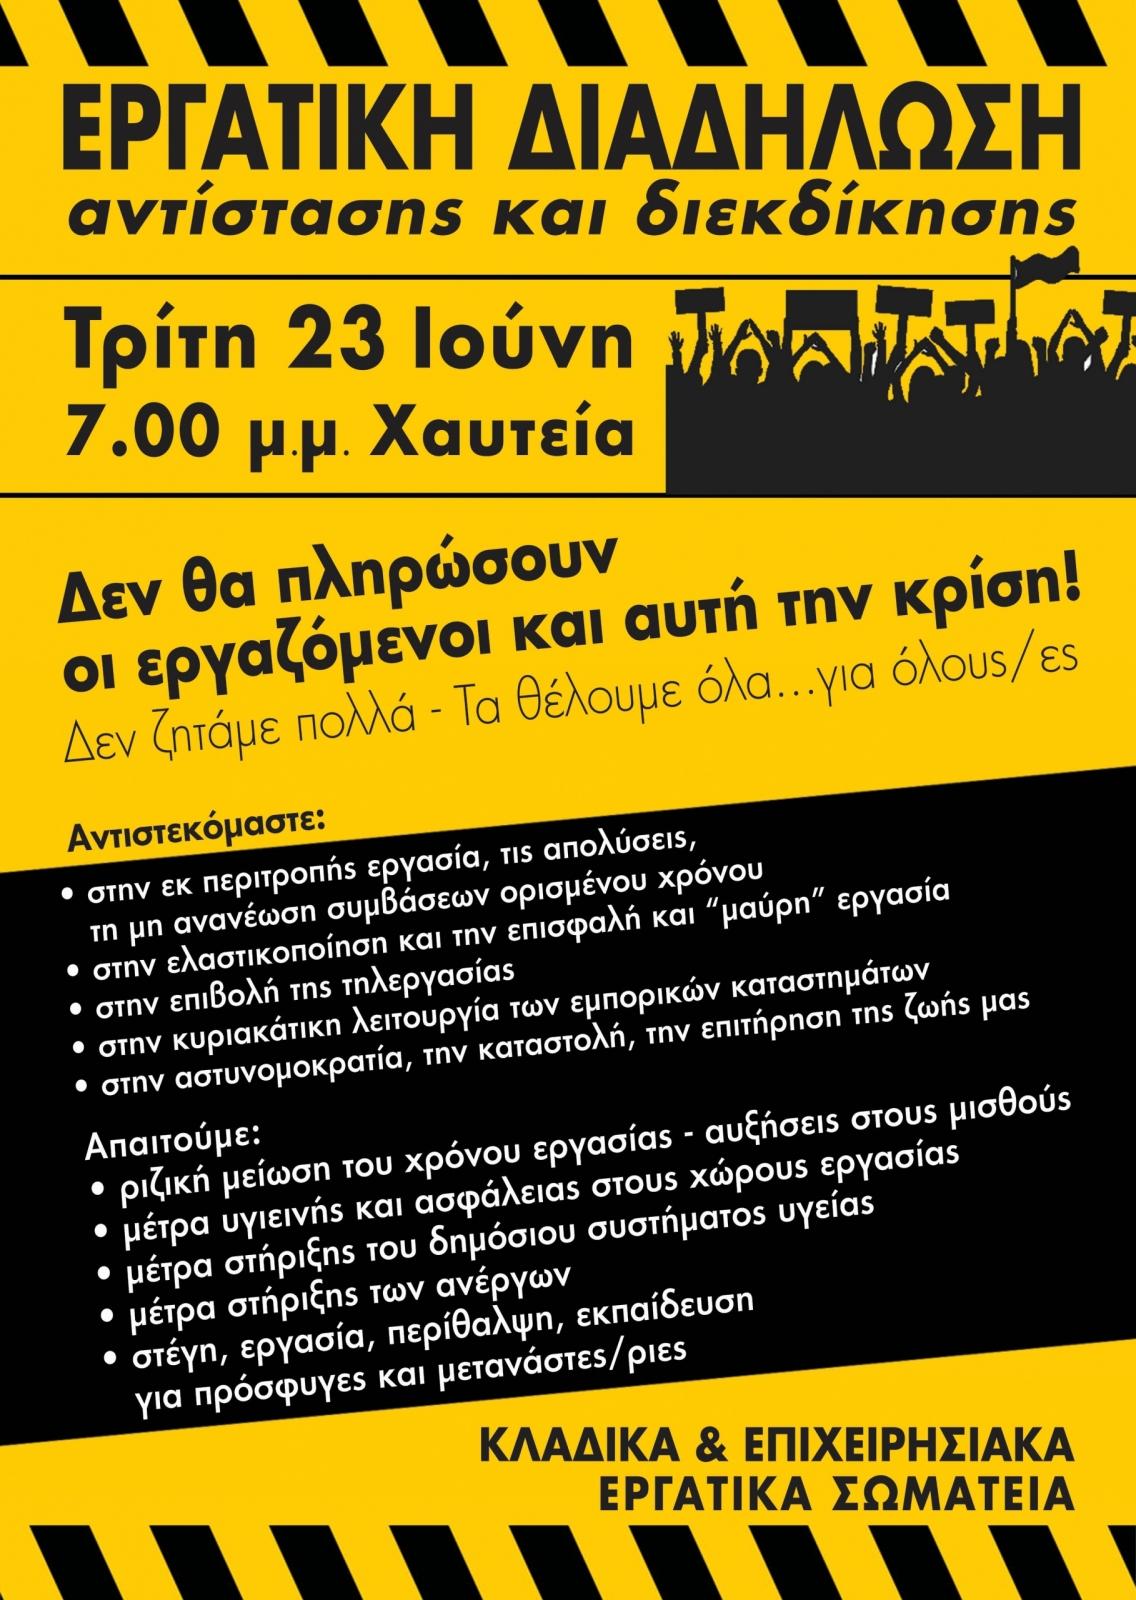 Αφίσα Σωματείων για την Εργατική Διαδήλωση στις 23 Ιουνίου